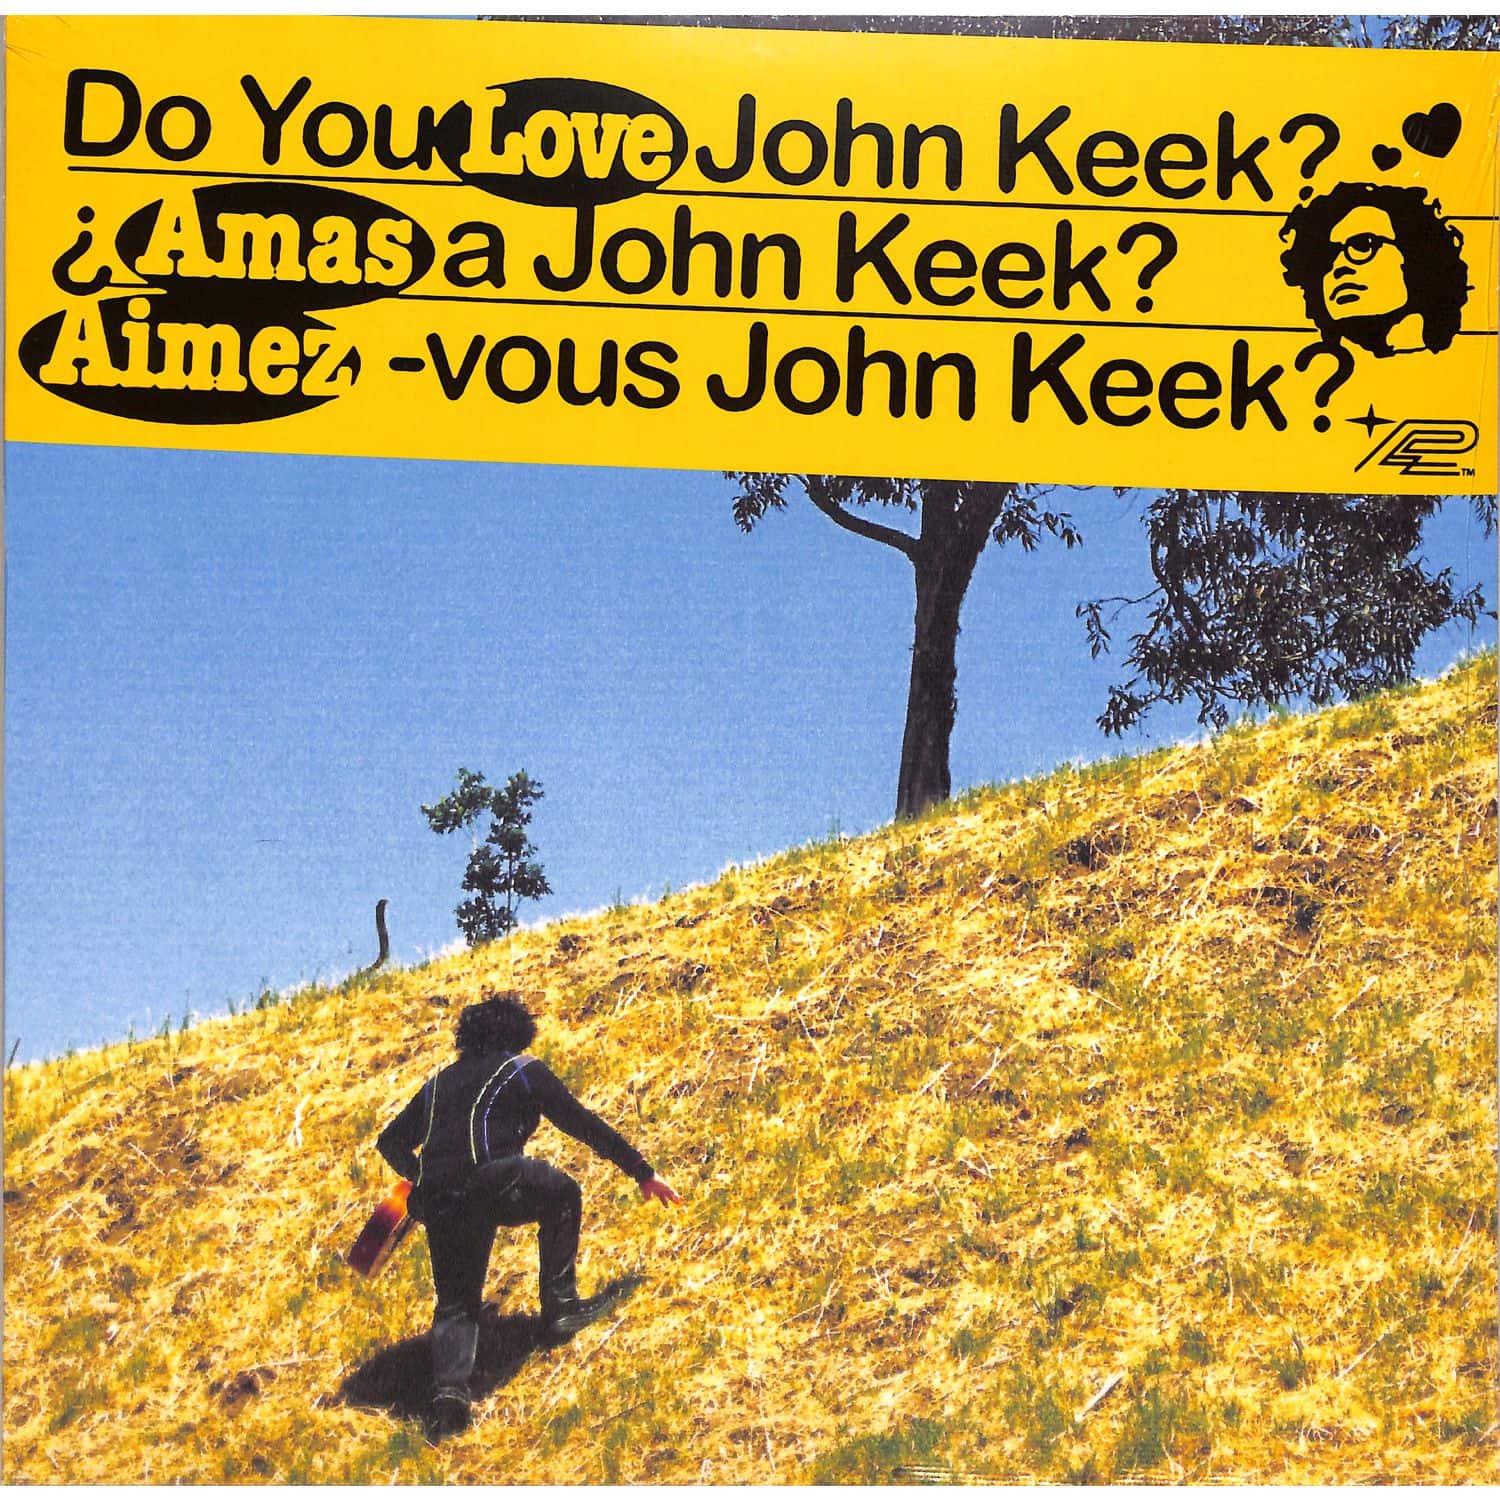 John Keek - DO YOU LOVE JOHN KEEK?